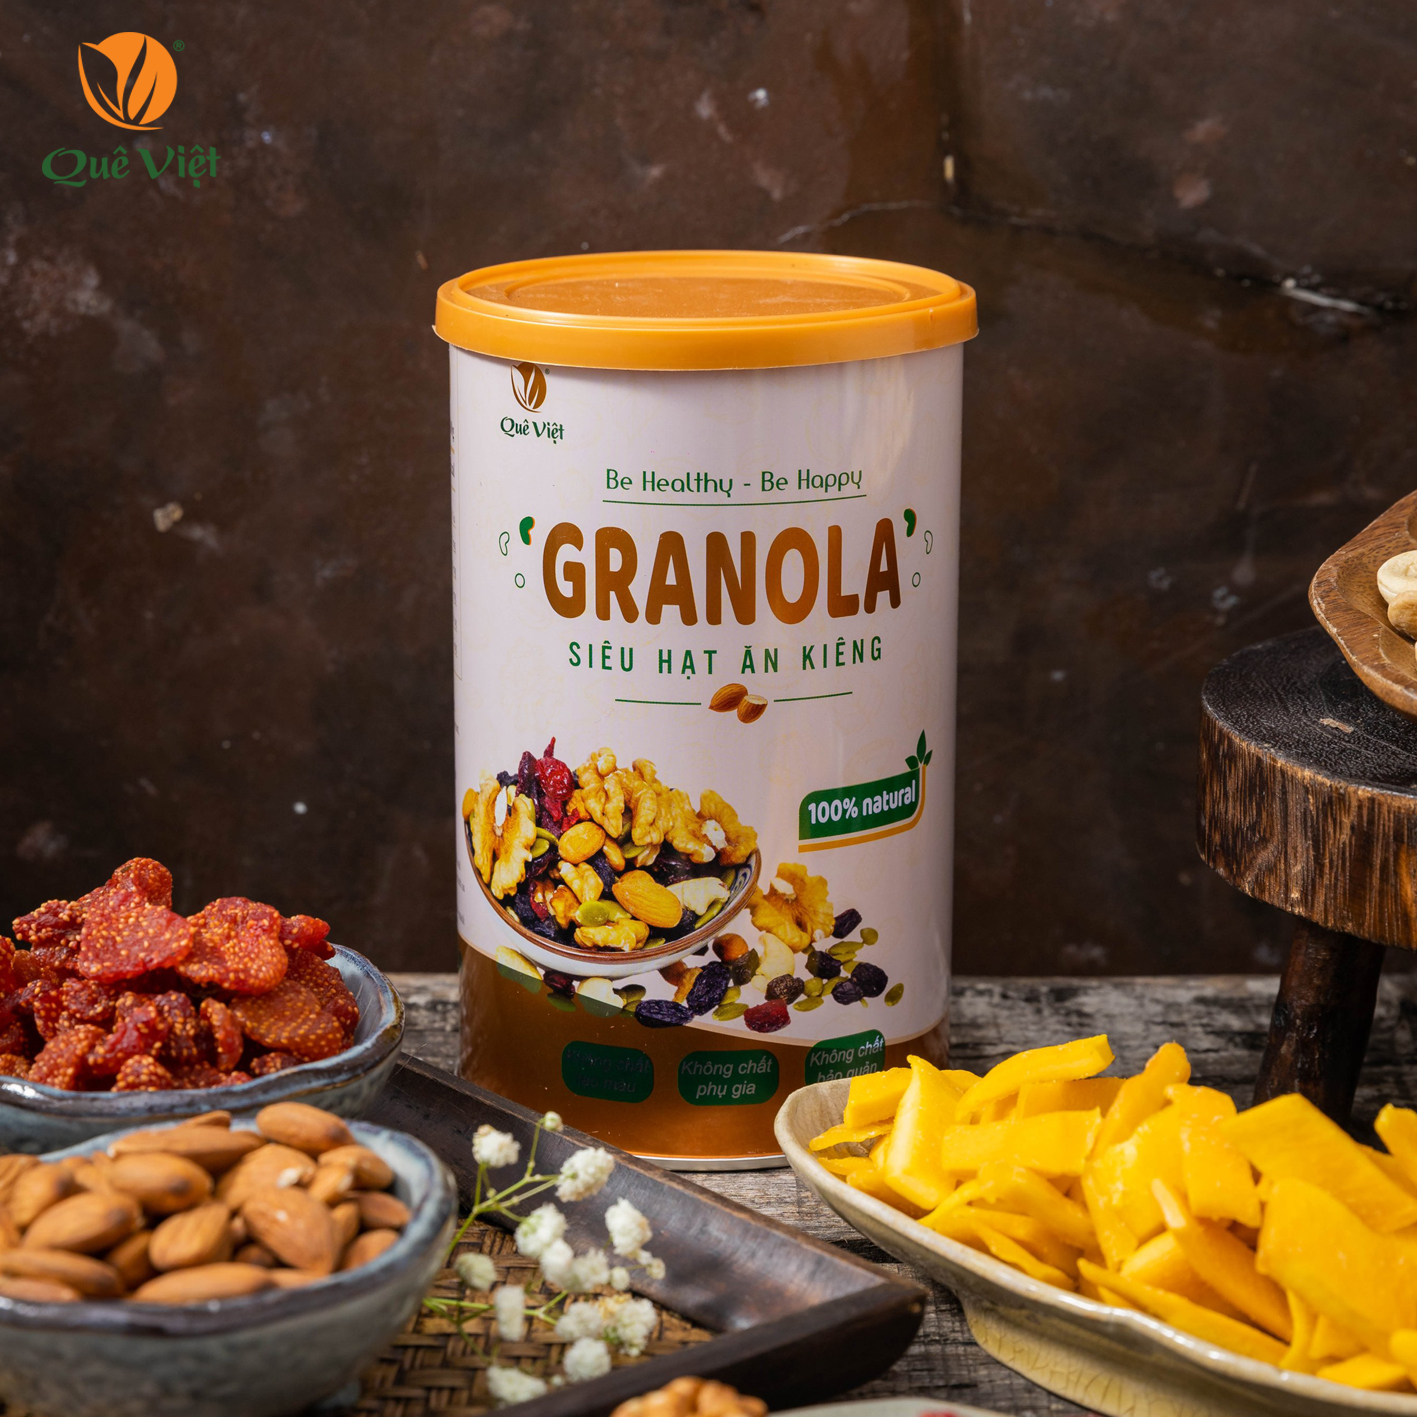 Granola siêu hạt ngũ cốc ăn kiêng Quê Việt, nguyên liệu hữu cơ - combo 2 hộp x 500g/hộp